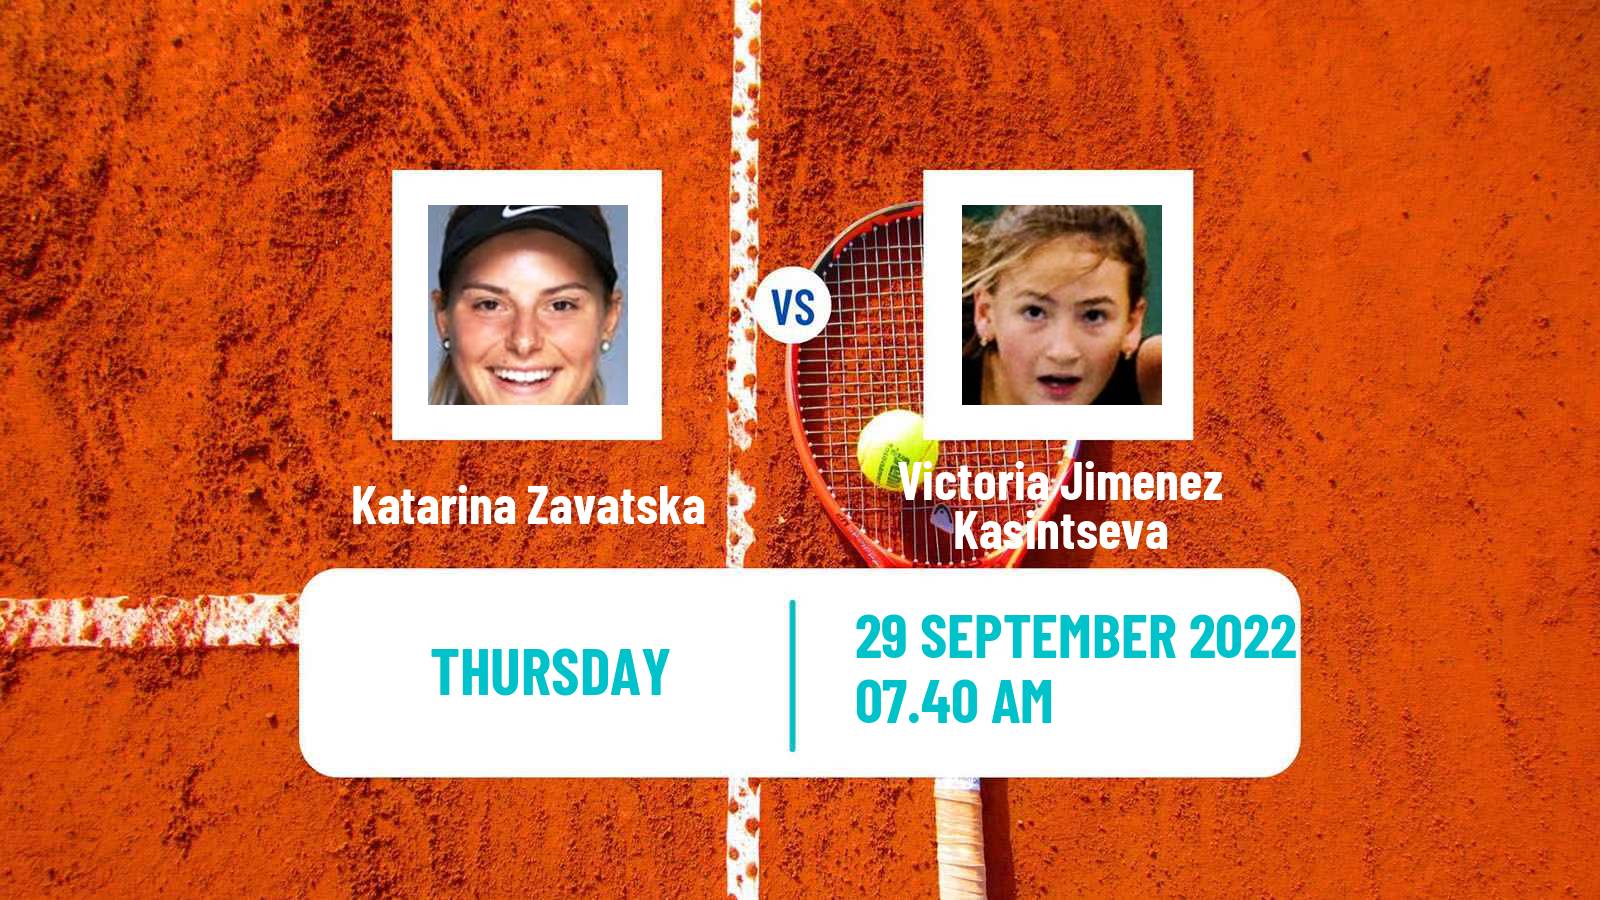 Tennis ITF Tournaments Katarina Zavatska - Victoria Jimenez Kasintseva